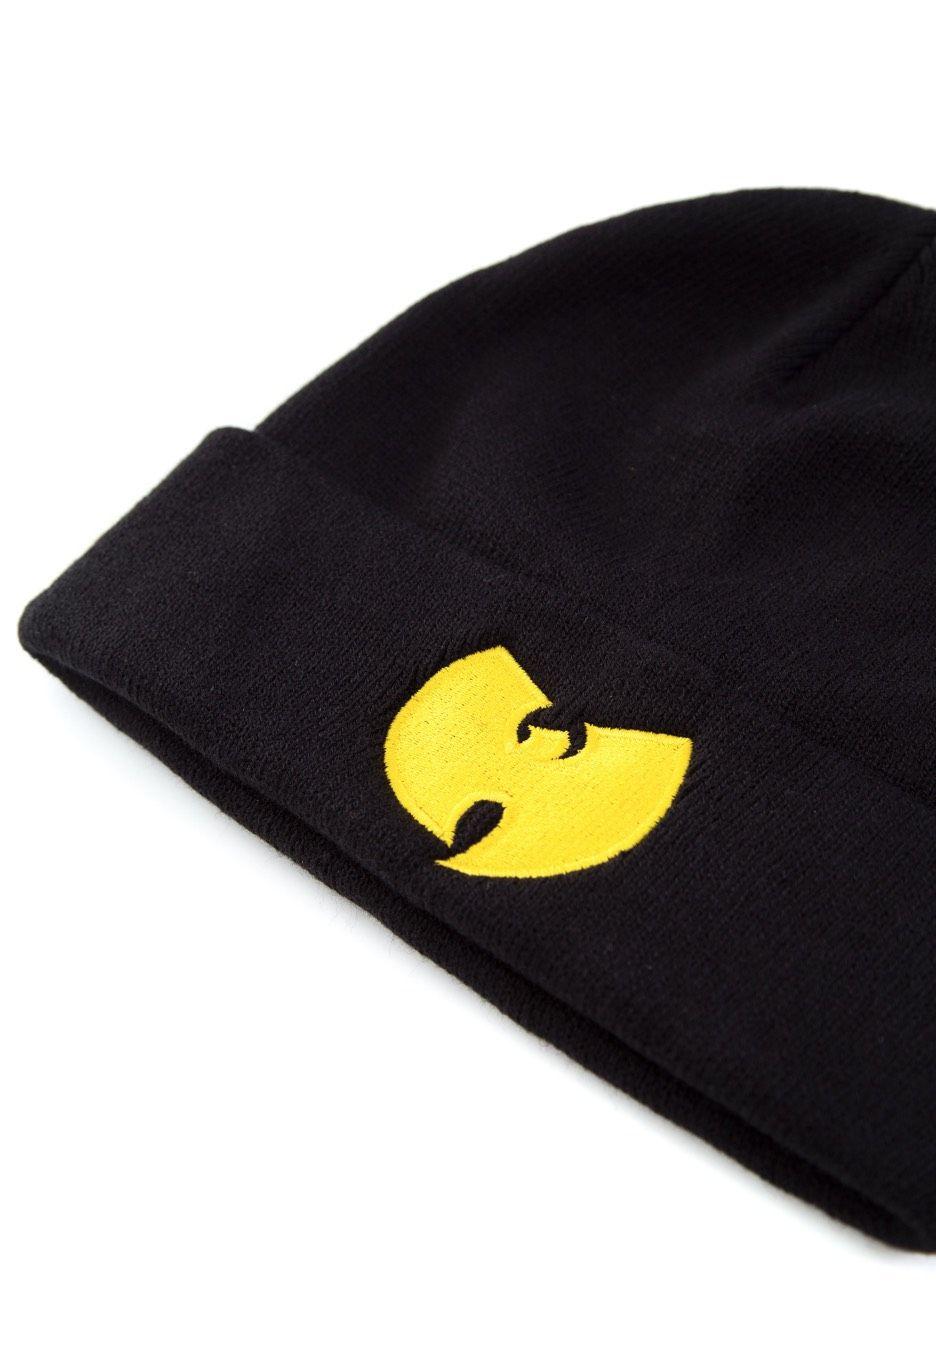 The Wu-Tang Clan Logo - Wu-Tang Clan - Logo - Beanie - Official Rap Merchandise Shop ...